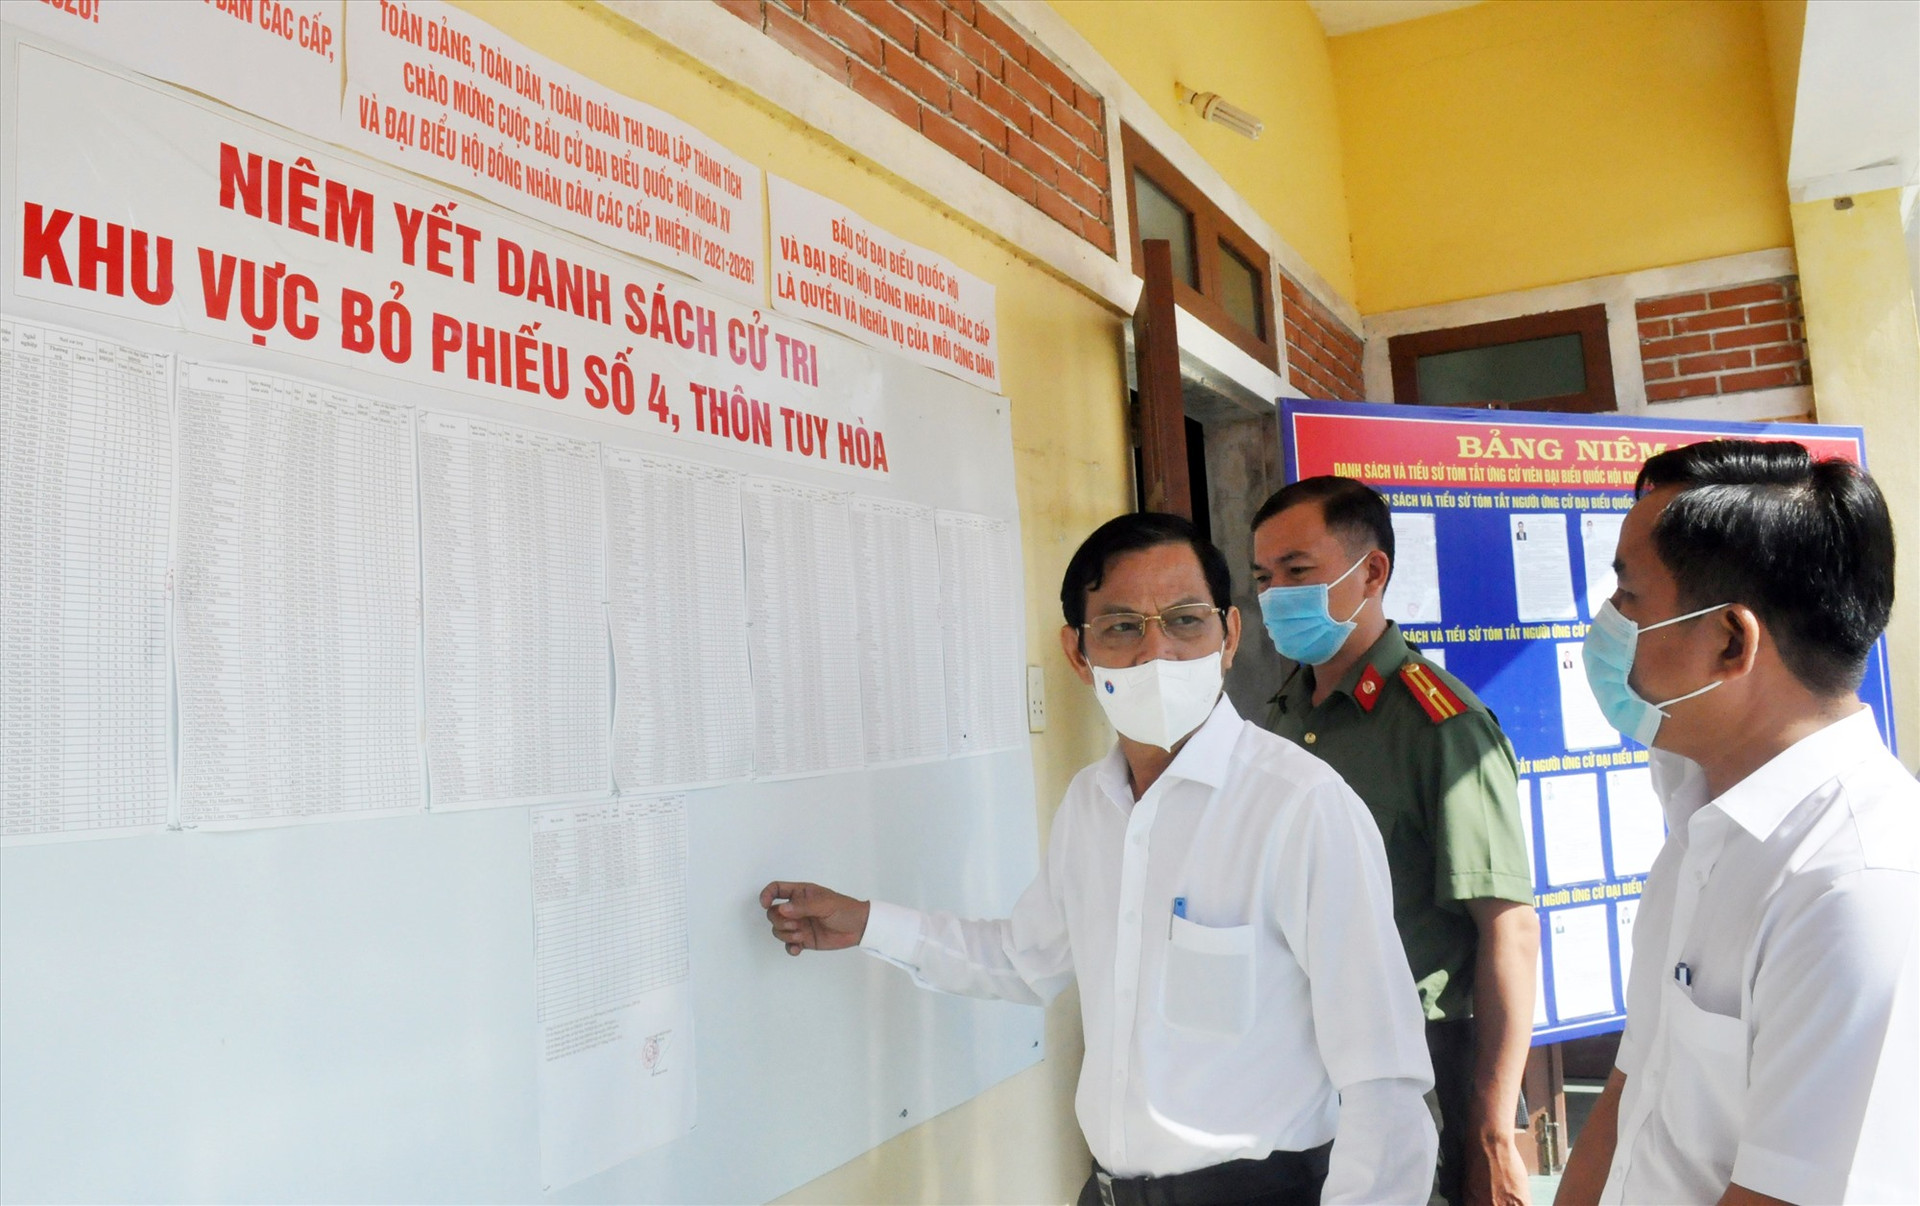 Trưởng ban Tổ chức Tỉnh ủy Nguyễn Chín - Trưởng đoàn kiểm tra số 2 của UBBC tỉnh kiểm tra thực tế tại khu vực bỏ phiếu số 4 (thôn Tuy Hòa, xã Bình Sơn, Hiệp Đức).